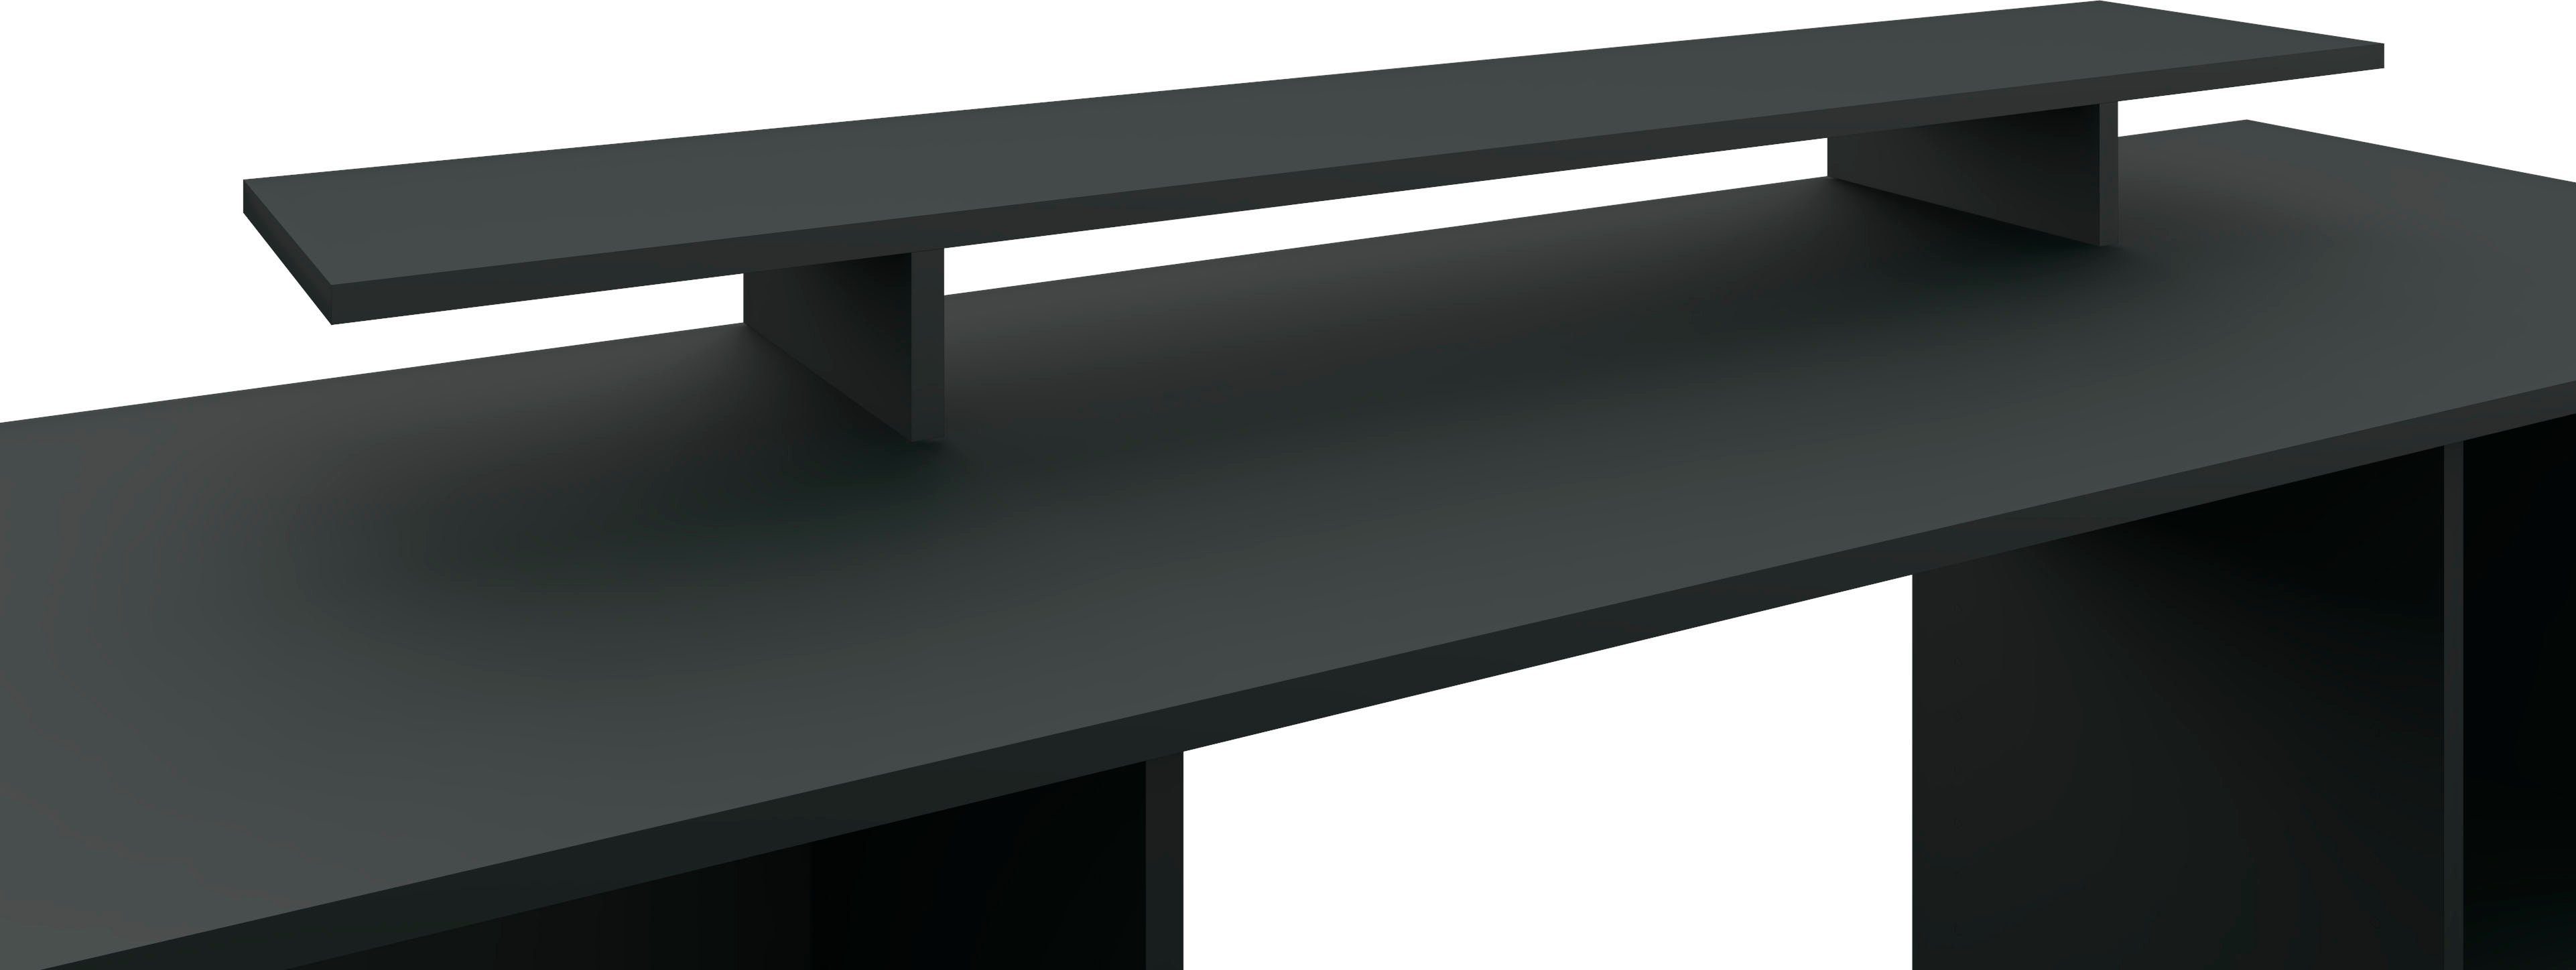 Monitorständer, in Germany im Schreibtischaufsatz Möbel Made Kai, borchardt Bildschirmerhöhung schwarz-matt Design, modernen